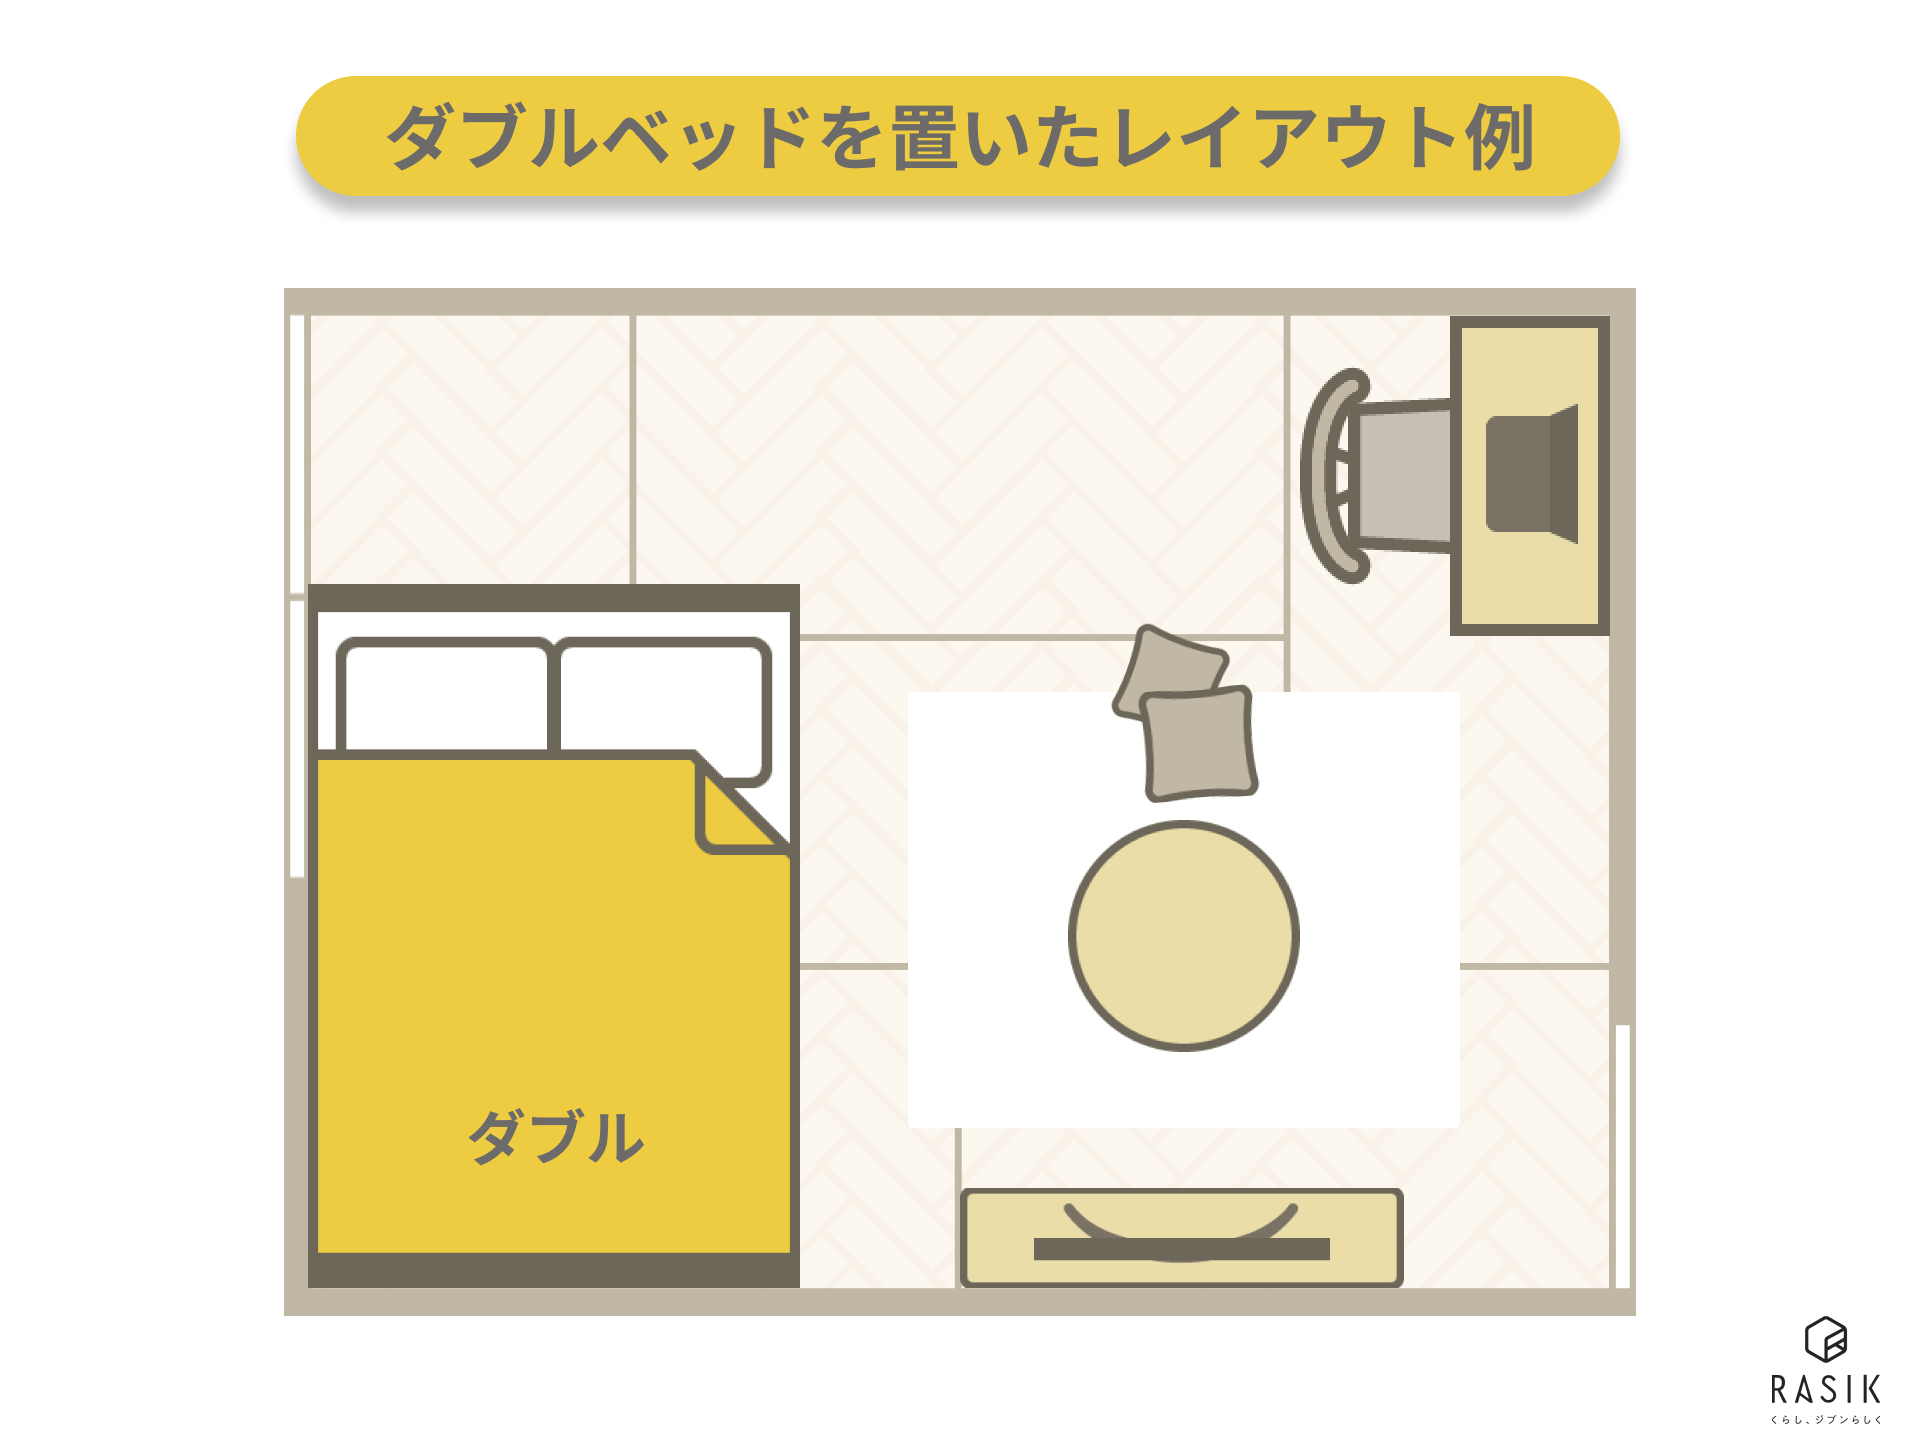 6畳の一人暮らしの部屋にダブルベッドを置いた例